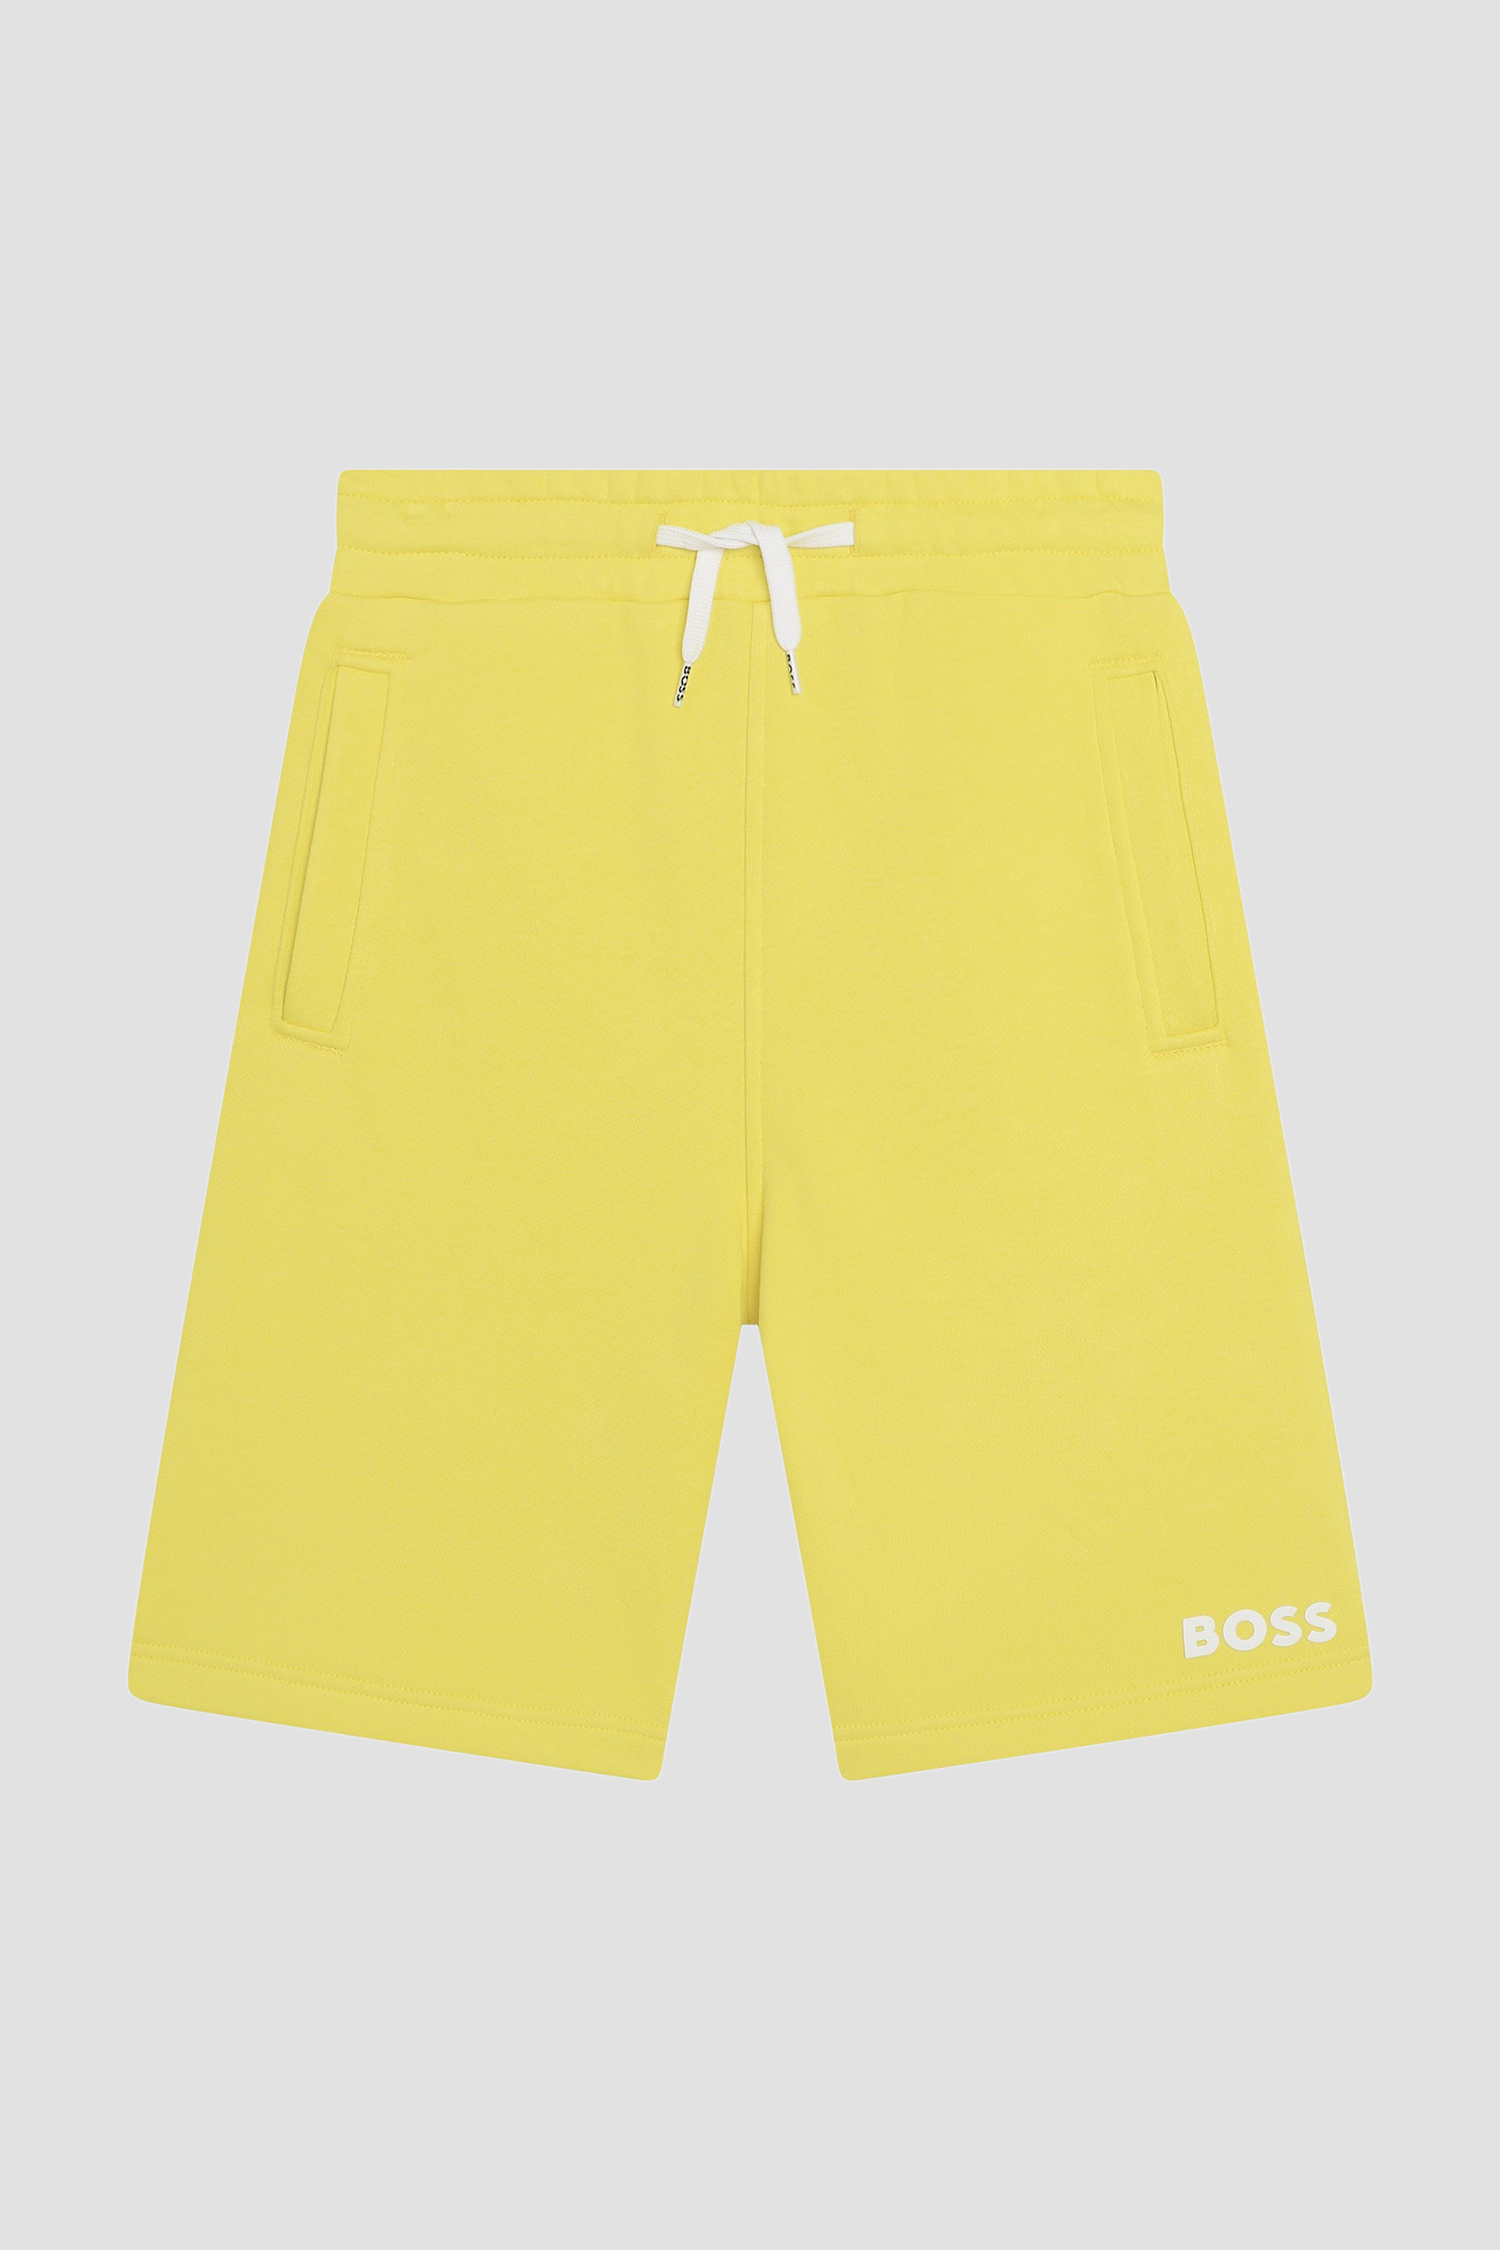 Детские желтые шорты BOSS kids J50680;508